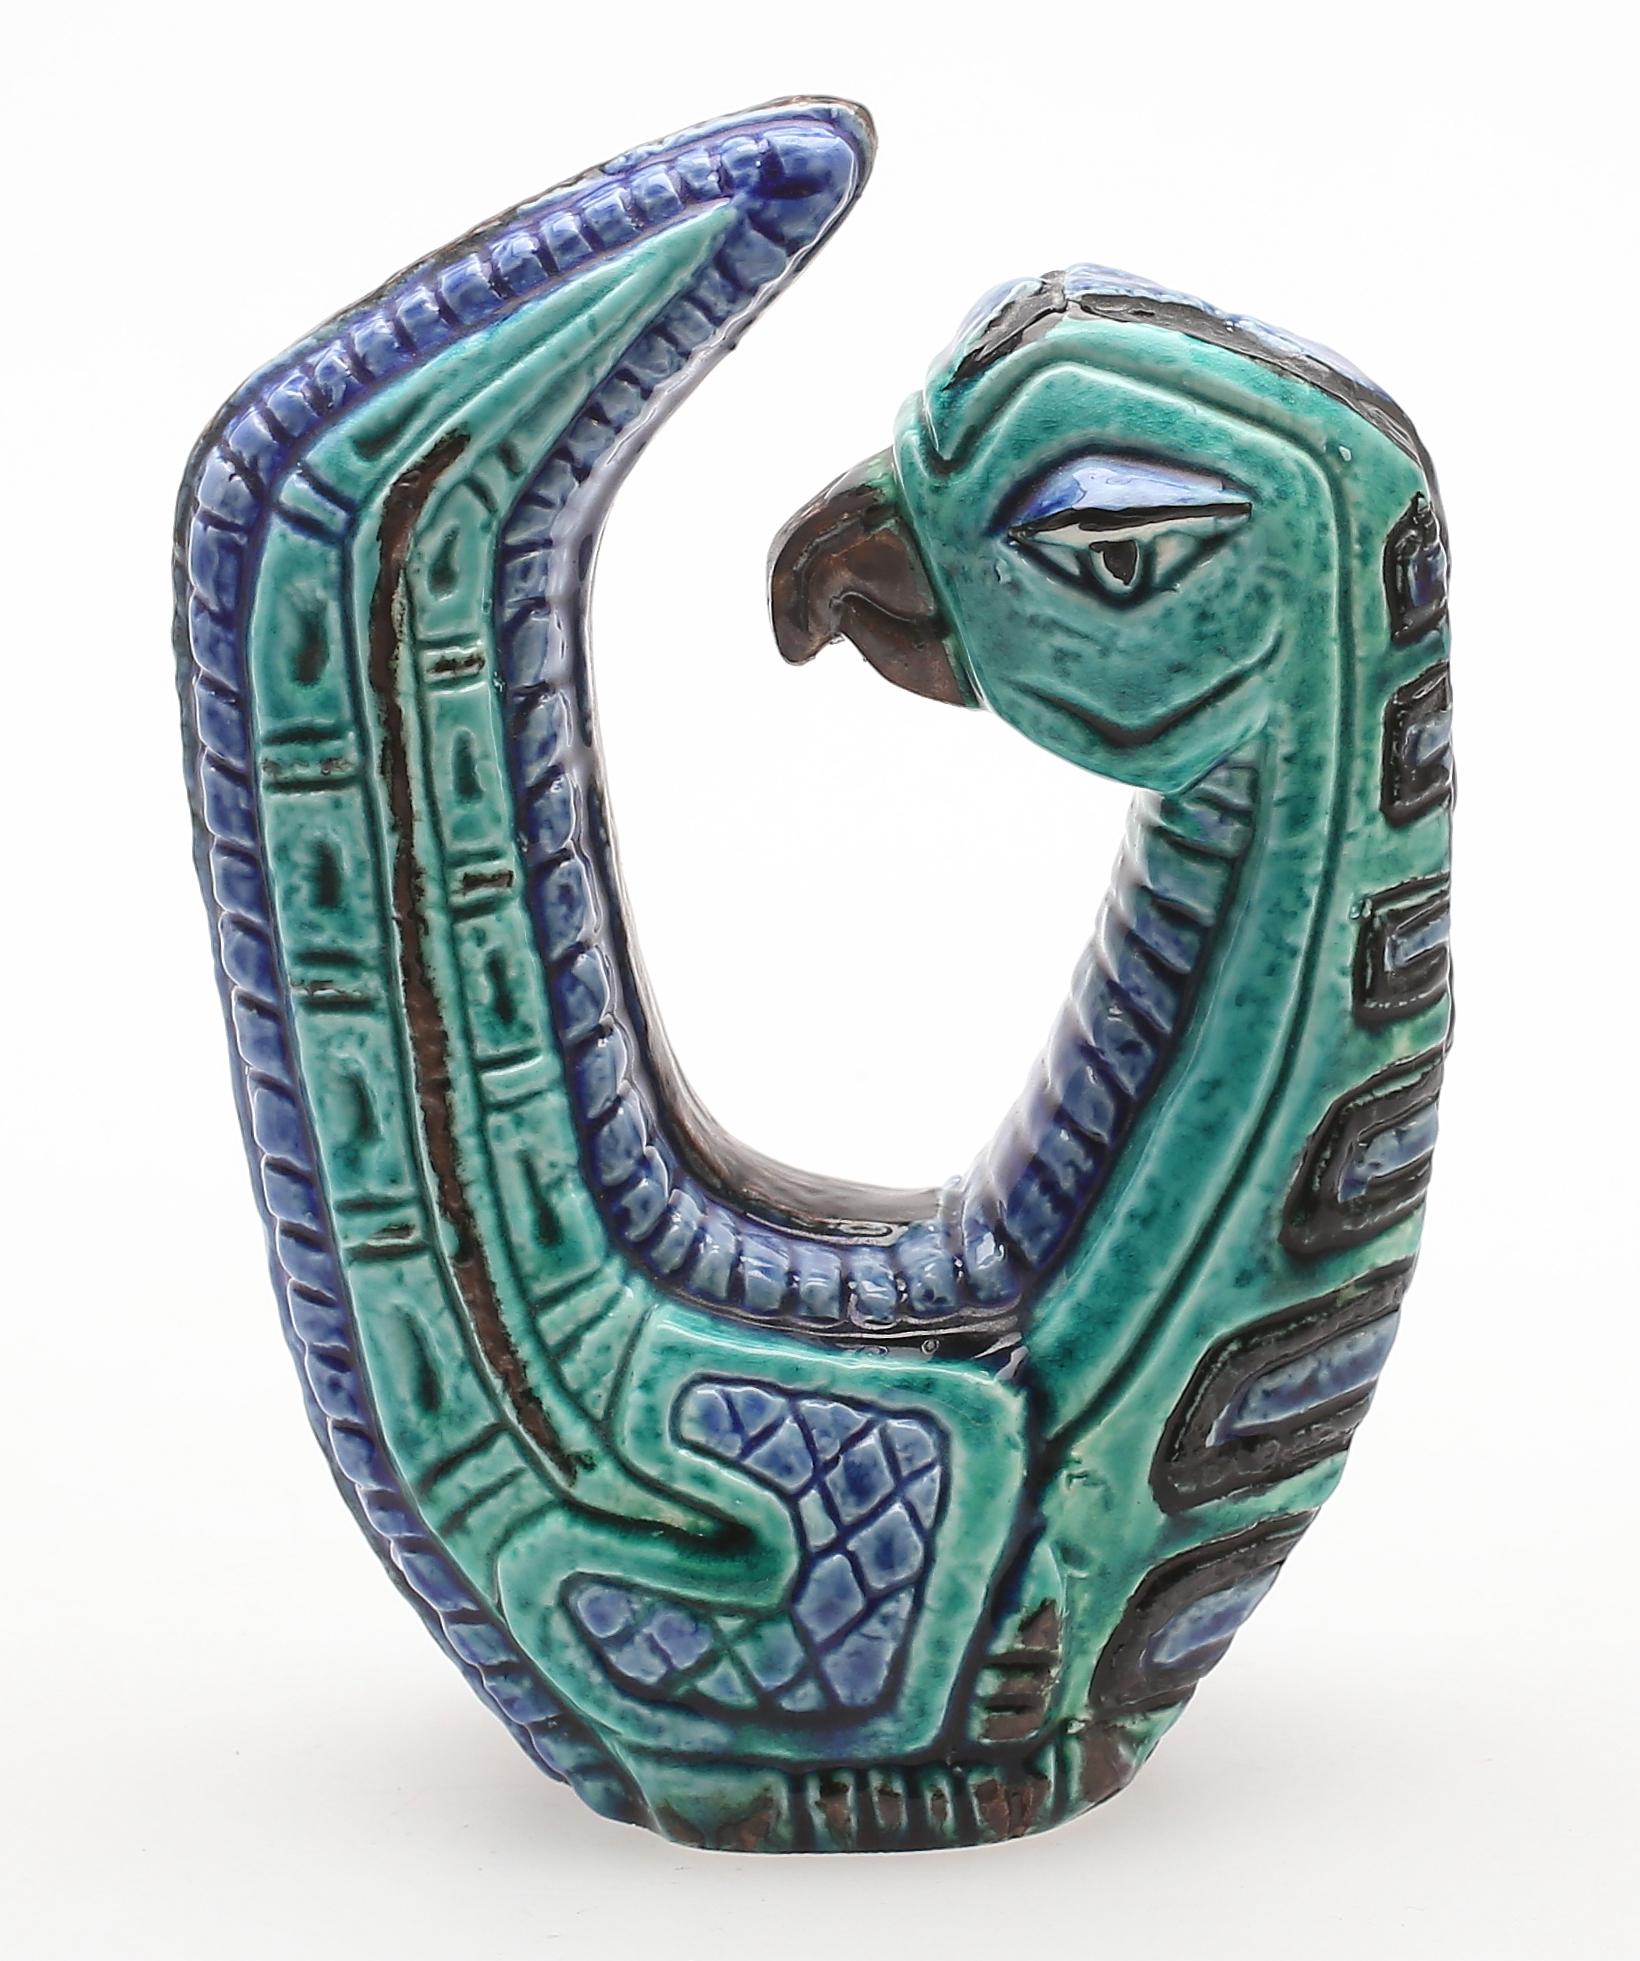 Dieser Vogel wurde von dem bekannten Künstler Gunnar Nylund in den 1960er Jahren geschaffen. Die Skulptur wird von Rörstrand, dem renommierten schwedischen Keramikunternehmen, hergestellt und trägt das Erbe des skandinavischen Designs und der